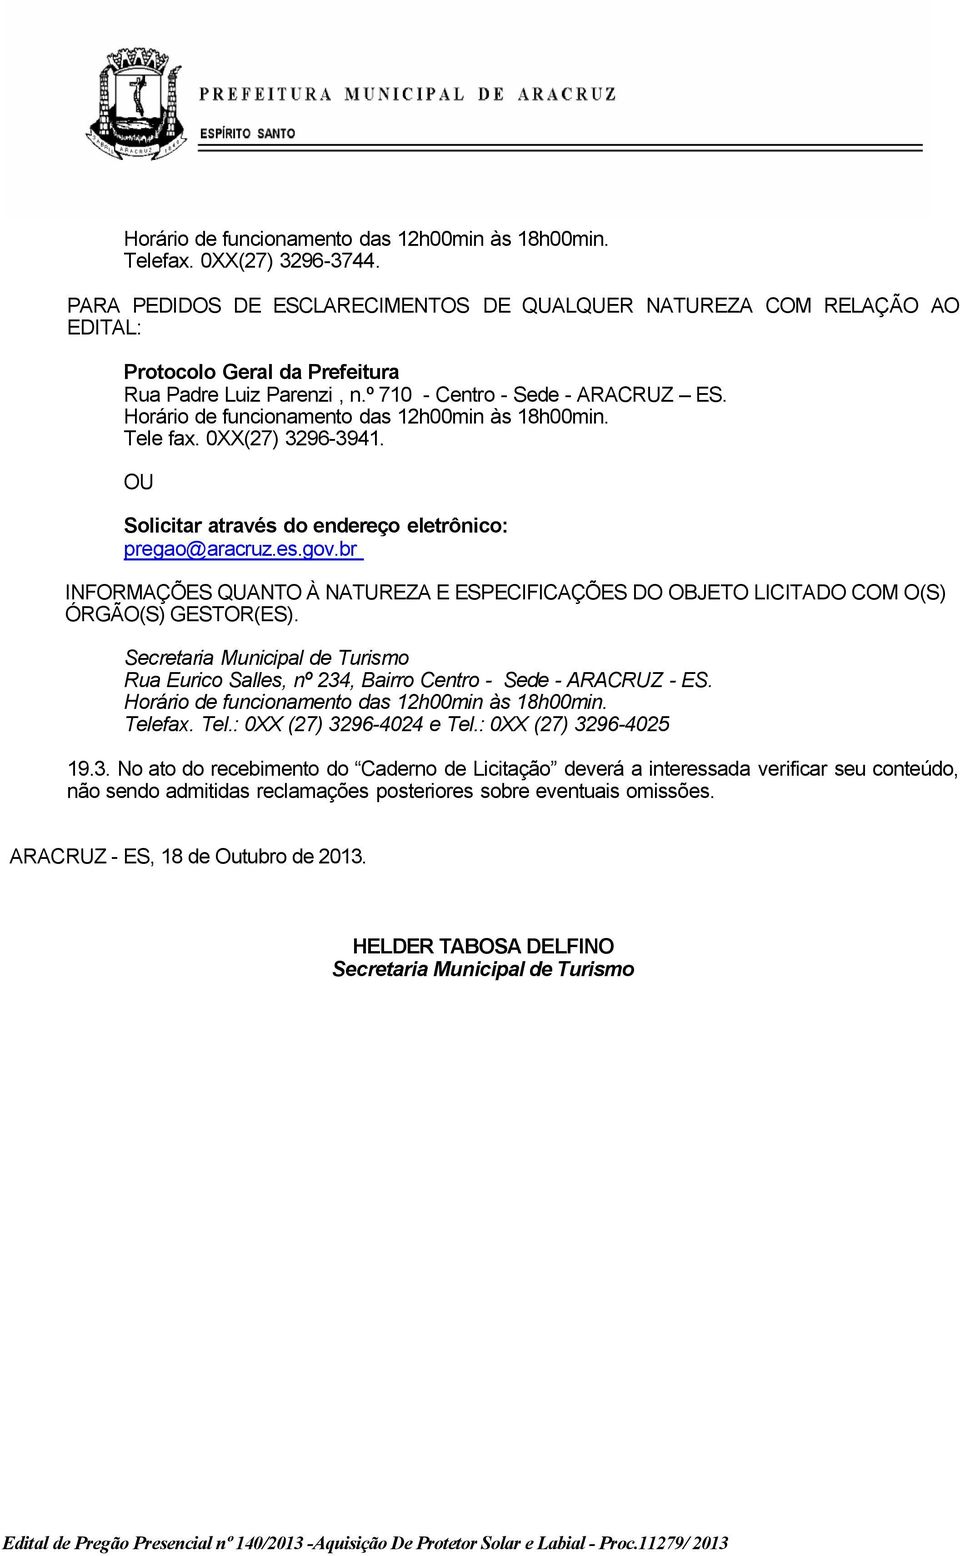 Horário de funcionamento das 12h00min às 18h00min. Tele fax. 0XX(27) 3296-3941. OU Solicitar através do endereço eletrônico: pregao@aracruz.es.gov.